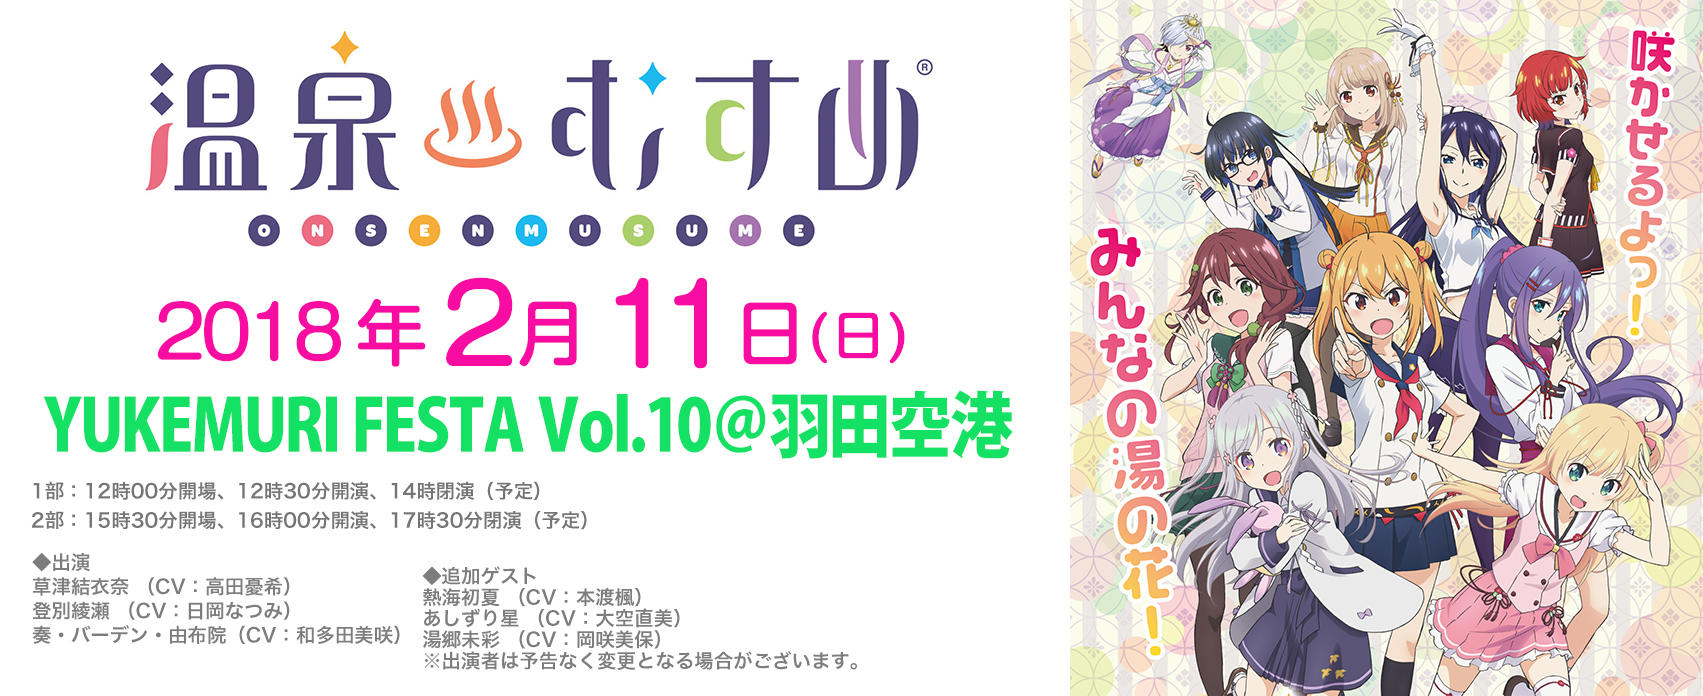 Yukemuri Festa Vol 10 羽田空港 東京のイベントスペース Tiat Sky Hall